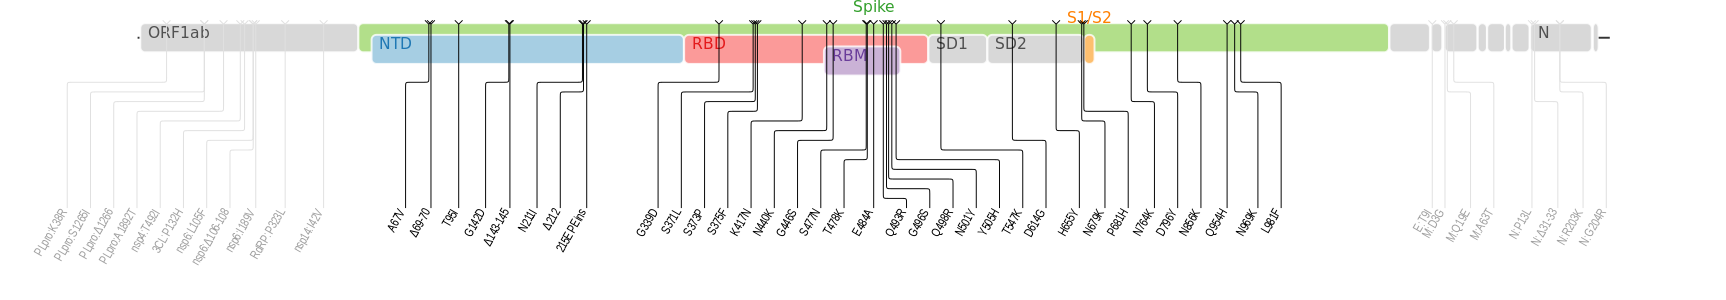 Omicron变异株的基因组序列如上图所示